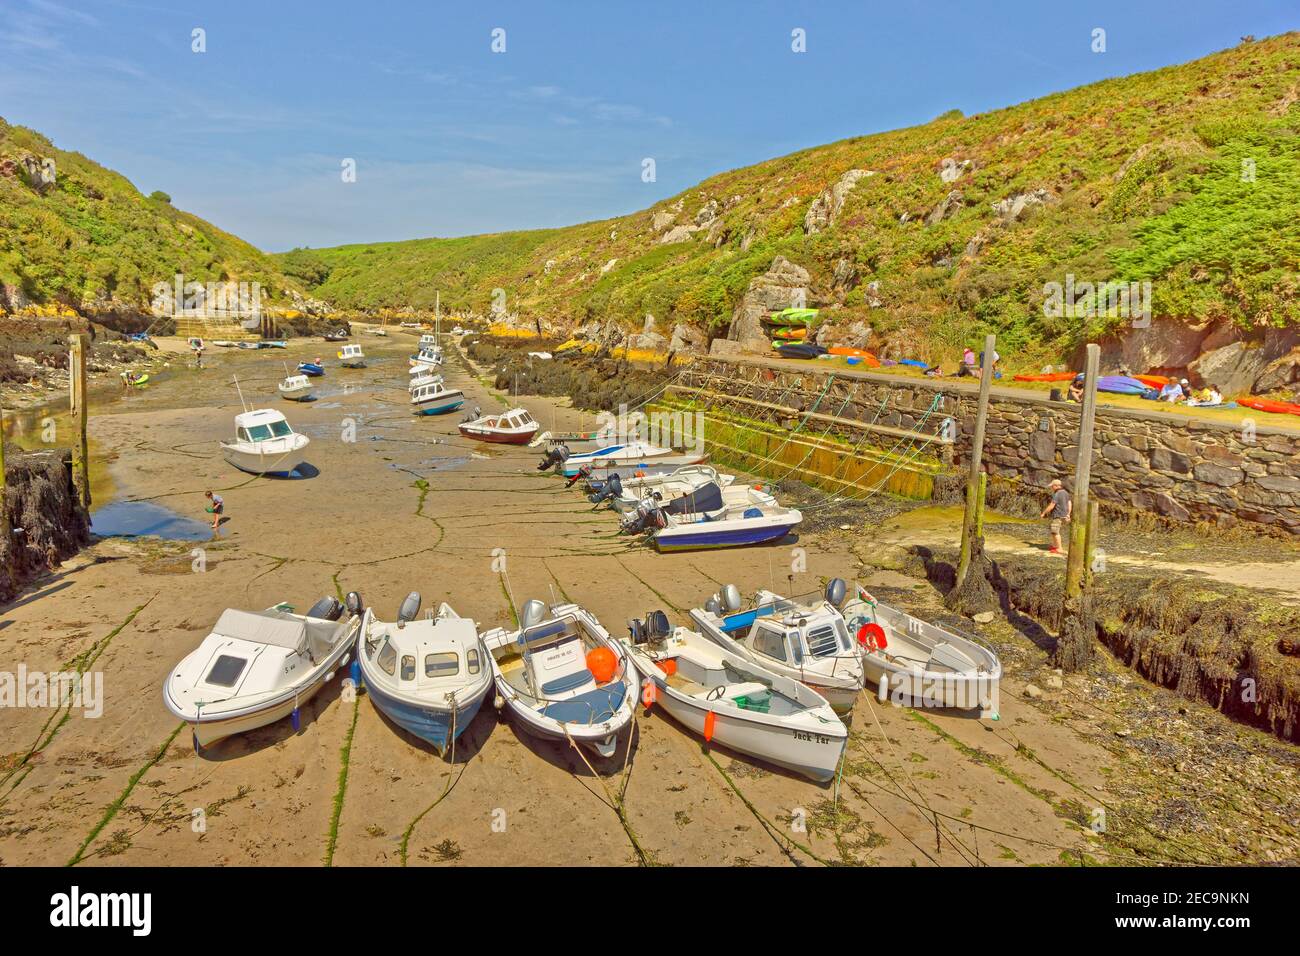 Porthclais Hafen in der Nähe der Stadt St. David's, Pembrokeshire, Wales, UK. Stockfoto